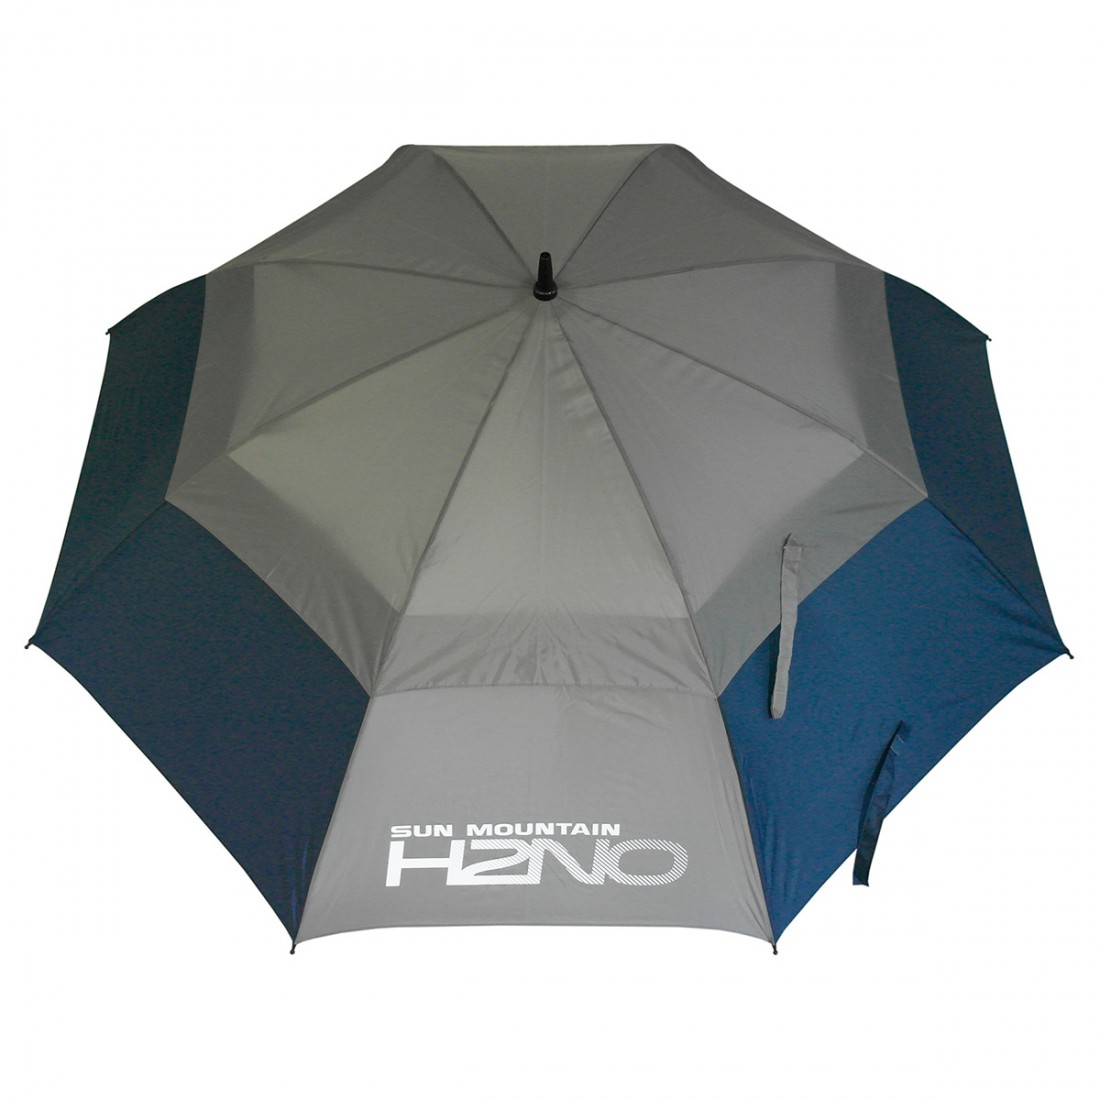 Alto parapluie de golf - double auvent, anti-UV, auto-ouverture